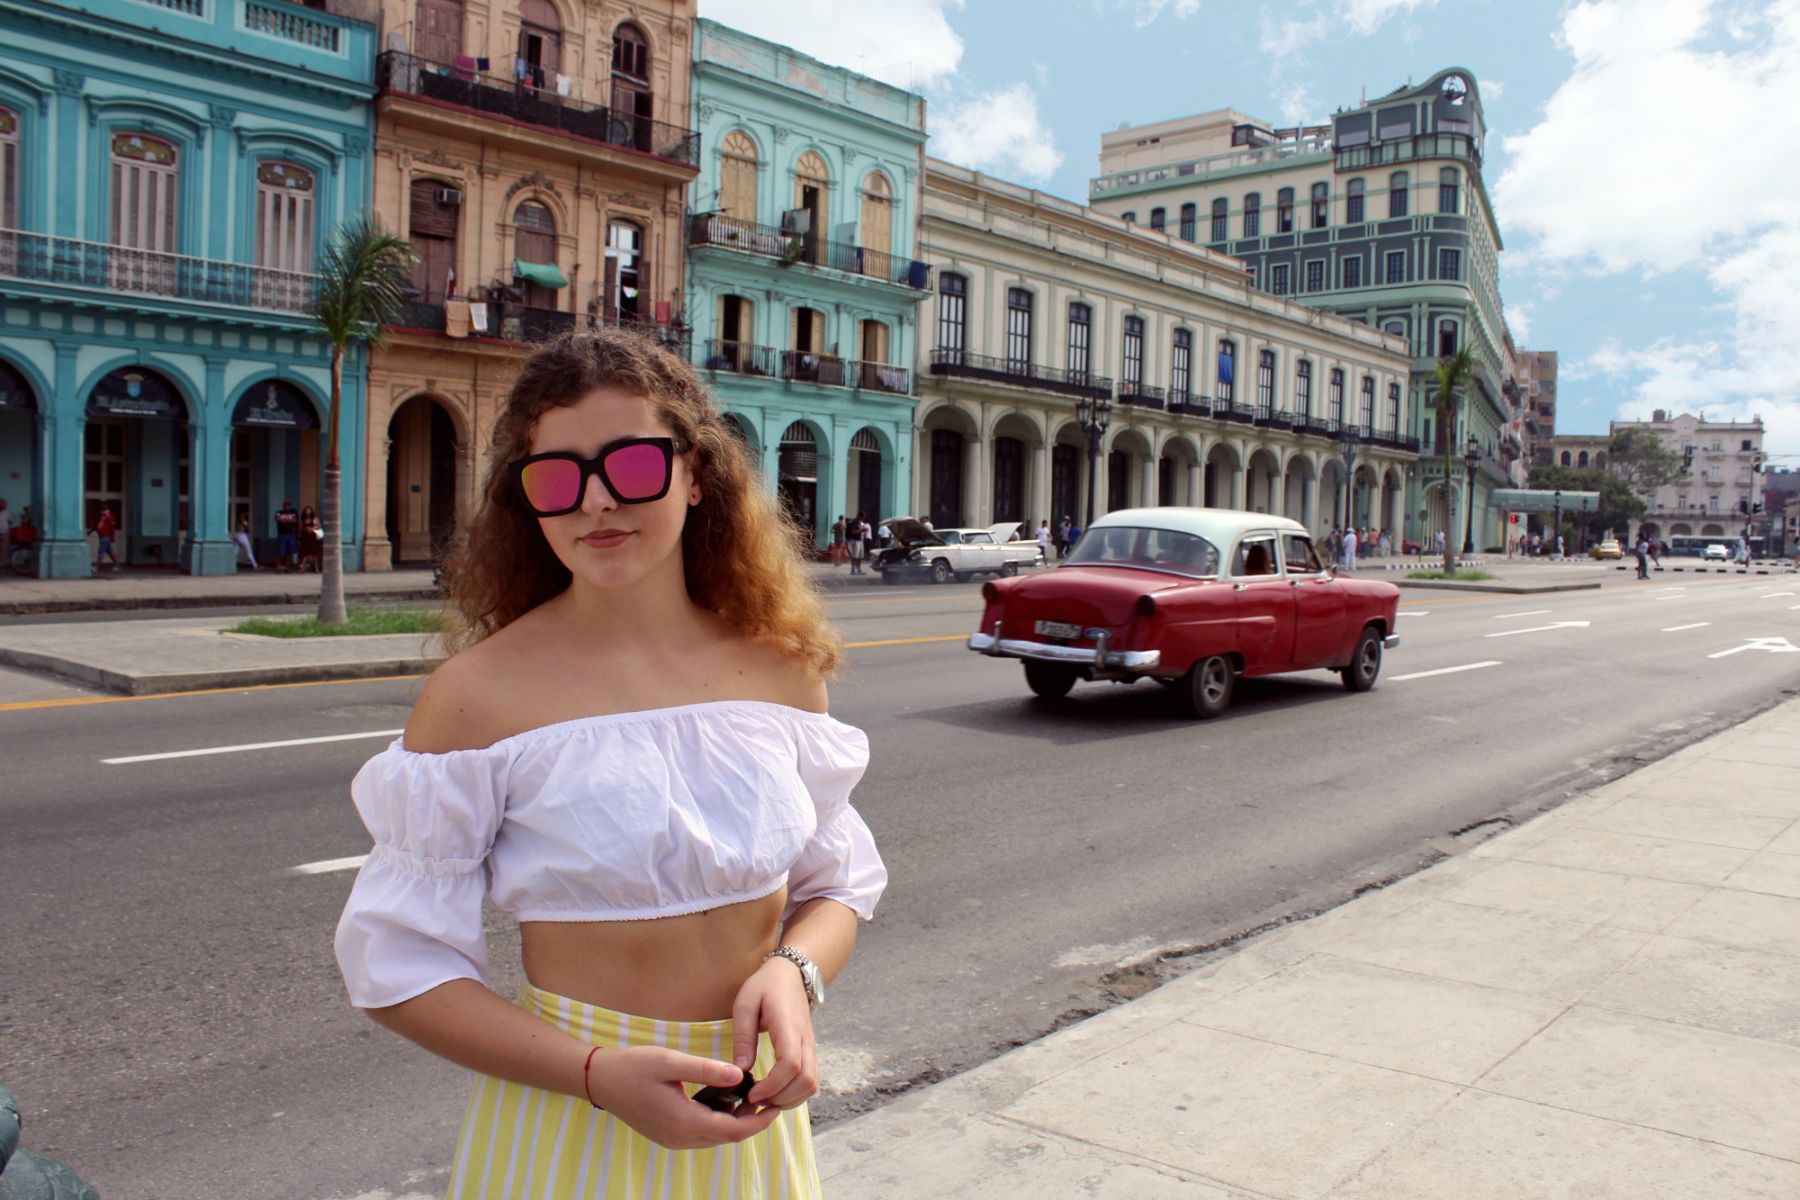 Kuba havana ziva rytmicka farebna a miestami hroziva